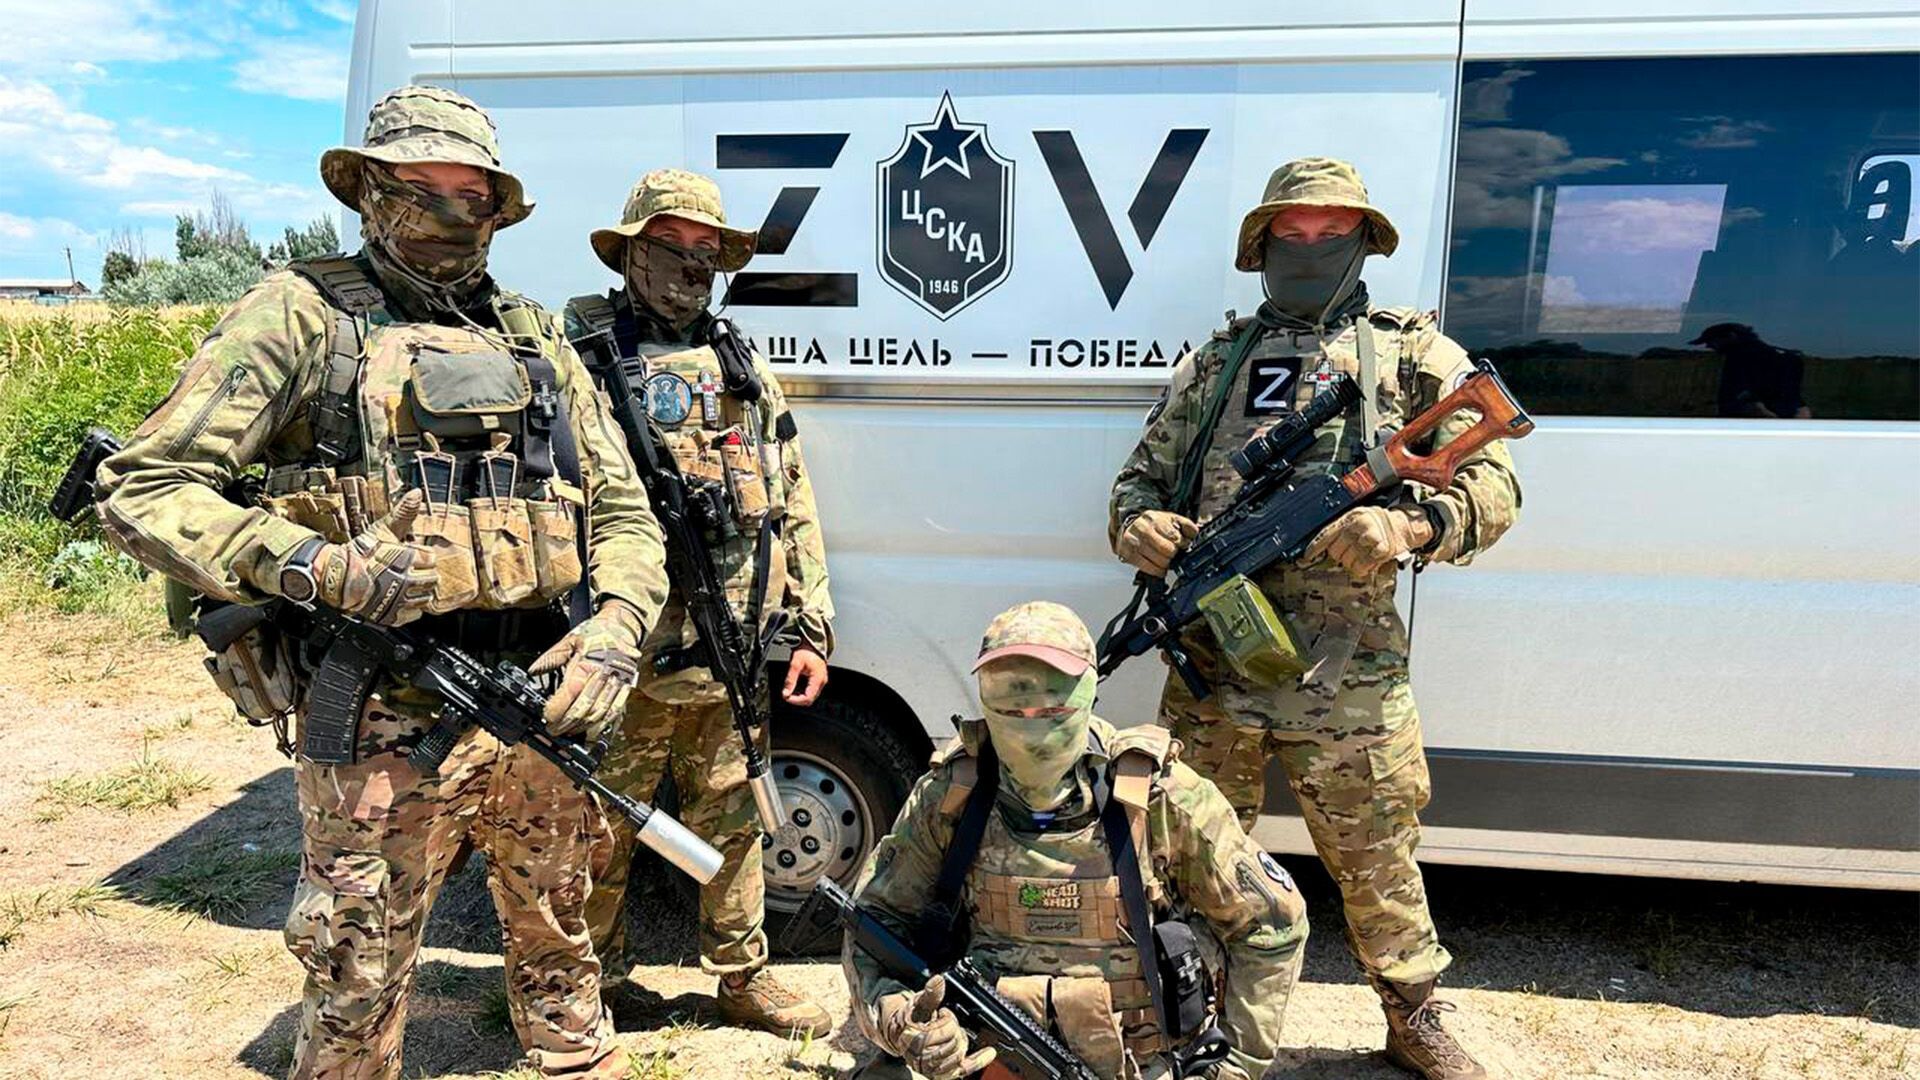 Słynny moskiewski klub pomógł terrorystom walczącym na Ukrainie i potwierdził swój ''udział w ludobójstwie''